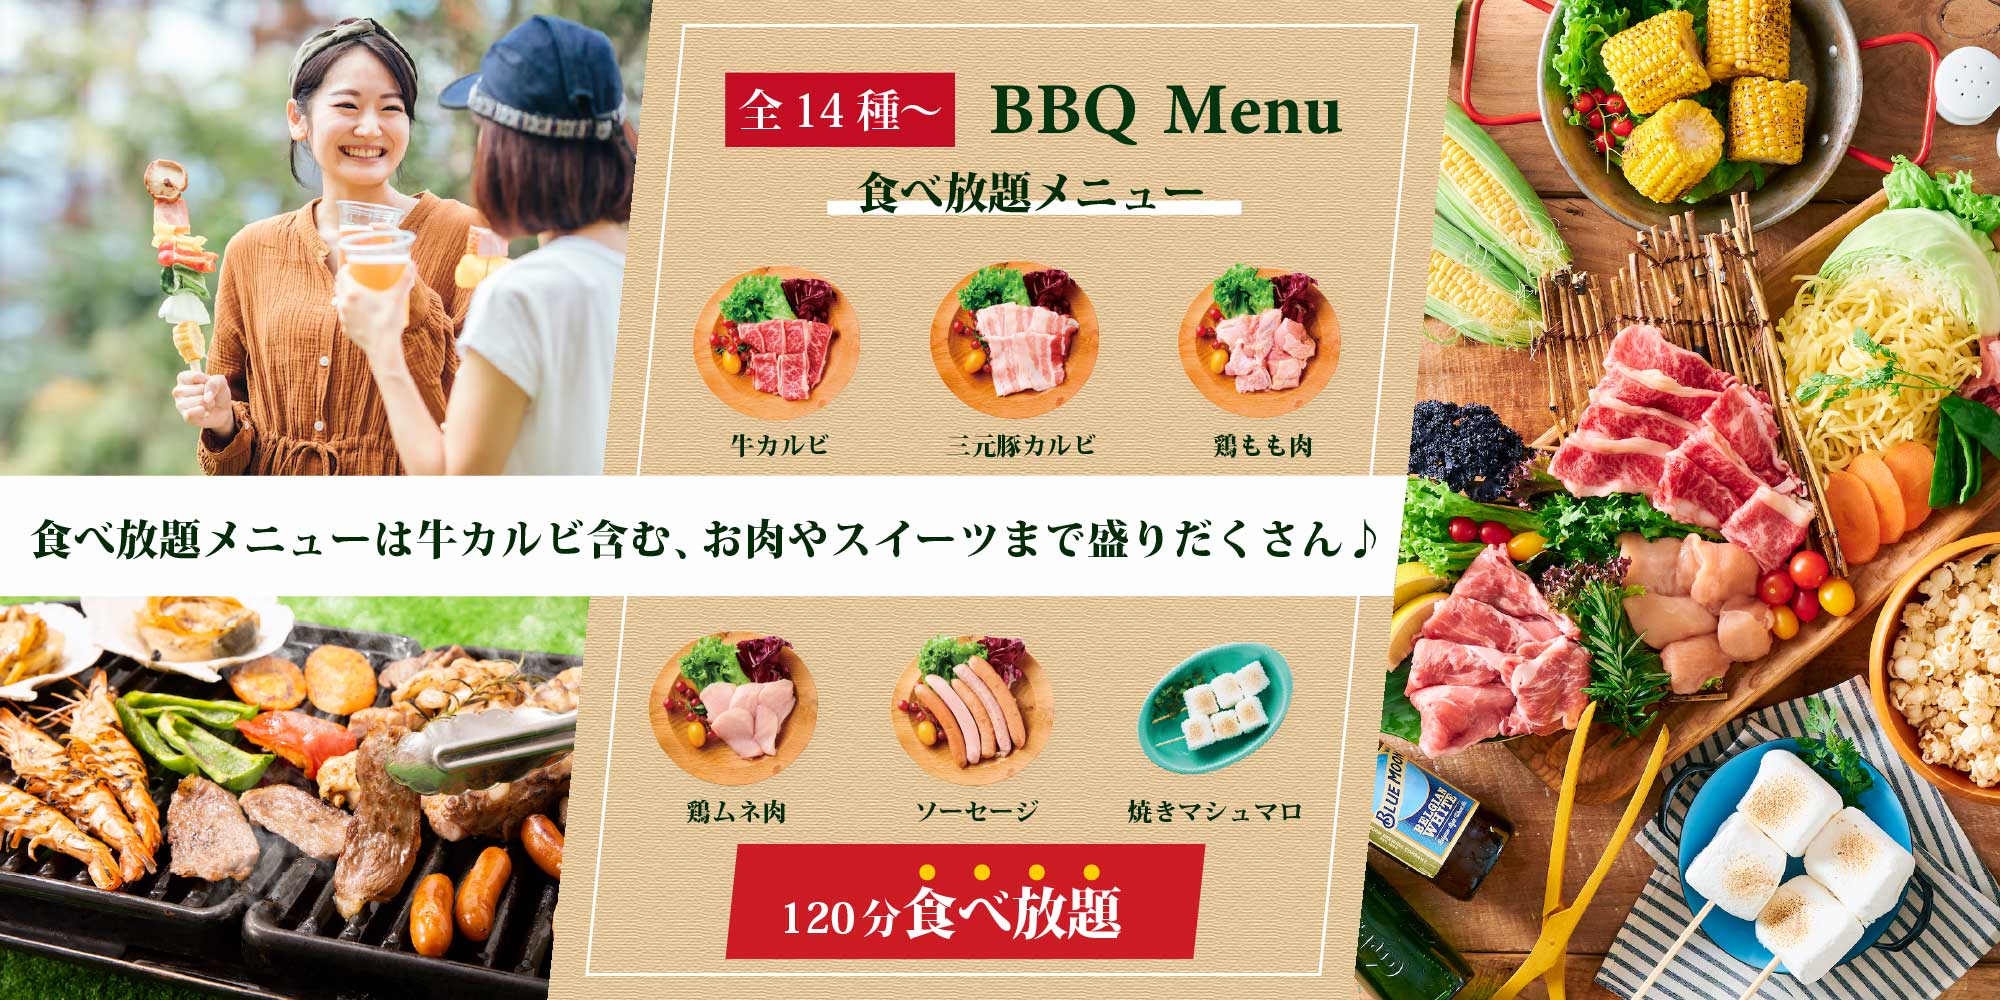 全14種〜 BBQ Menu 食べ放題メニュー 食べ放題メニューは牛カルビ含む、お肉やスイーツまで盛りだくさん♪